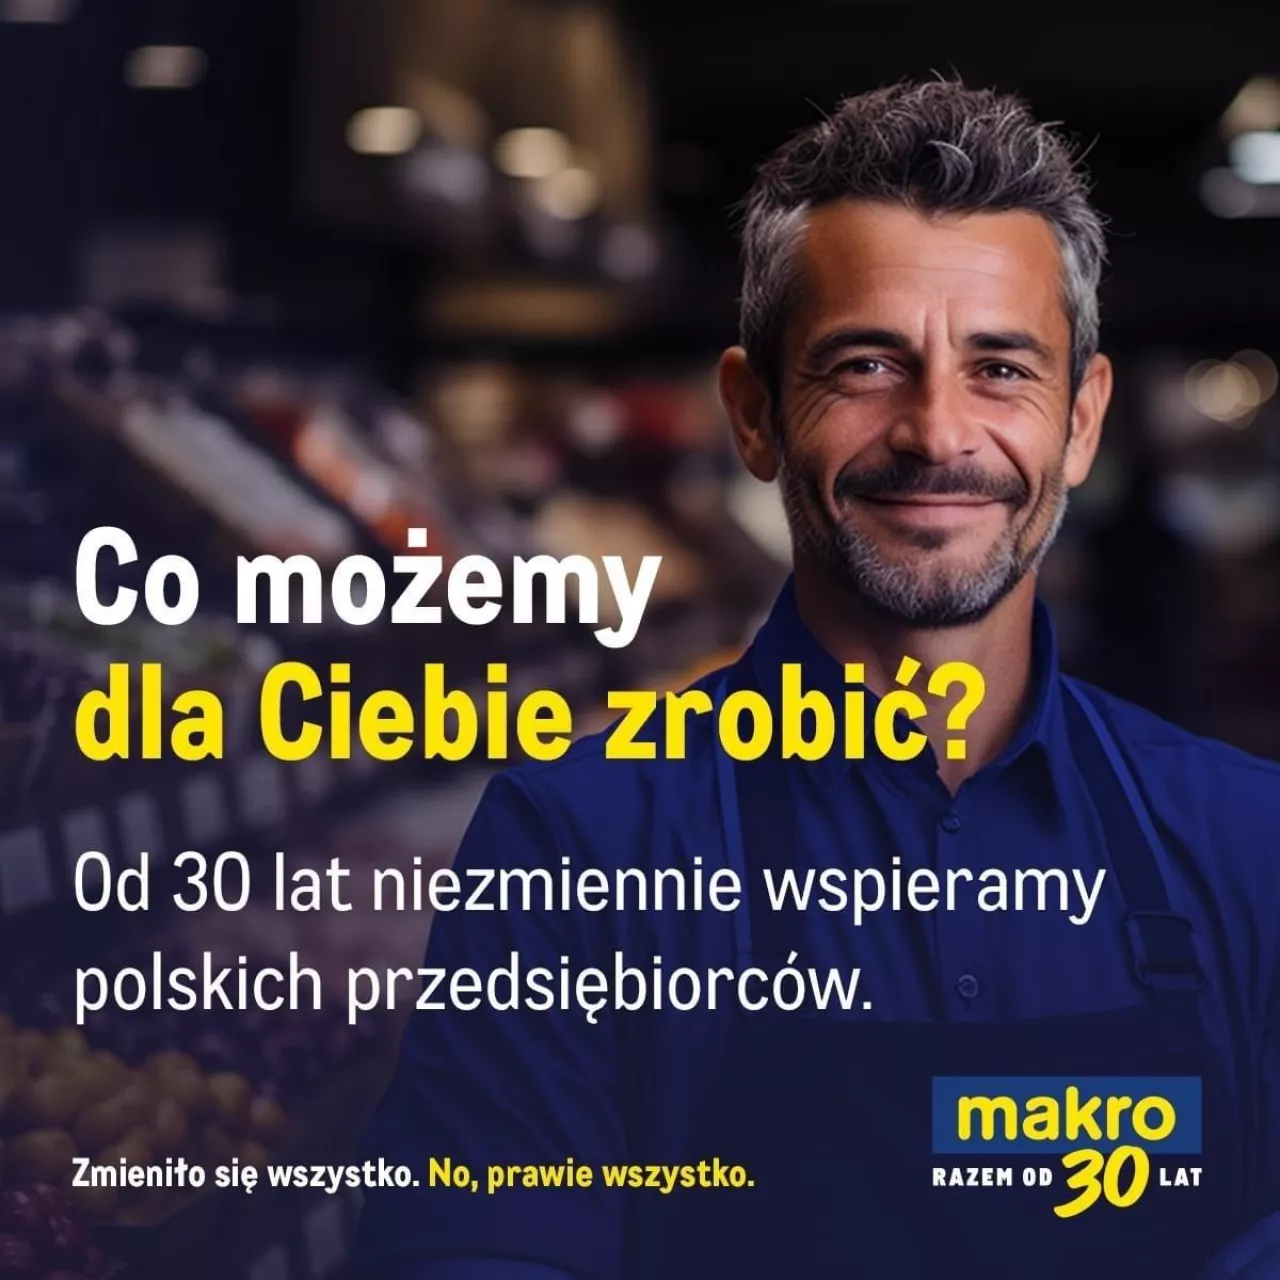 Trwa jubileuszowa kampania marketingowa MAKRO Polska z okazji 30-lecia działalności firmy na polskim rynku